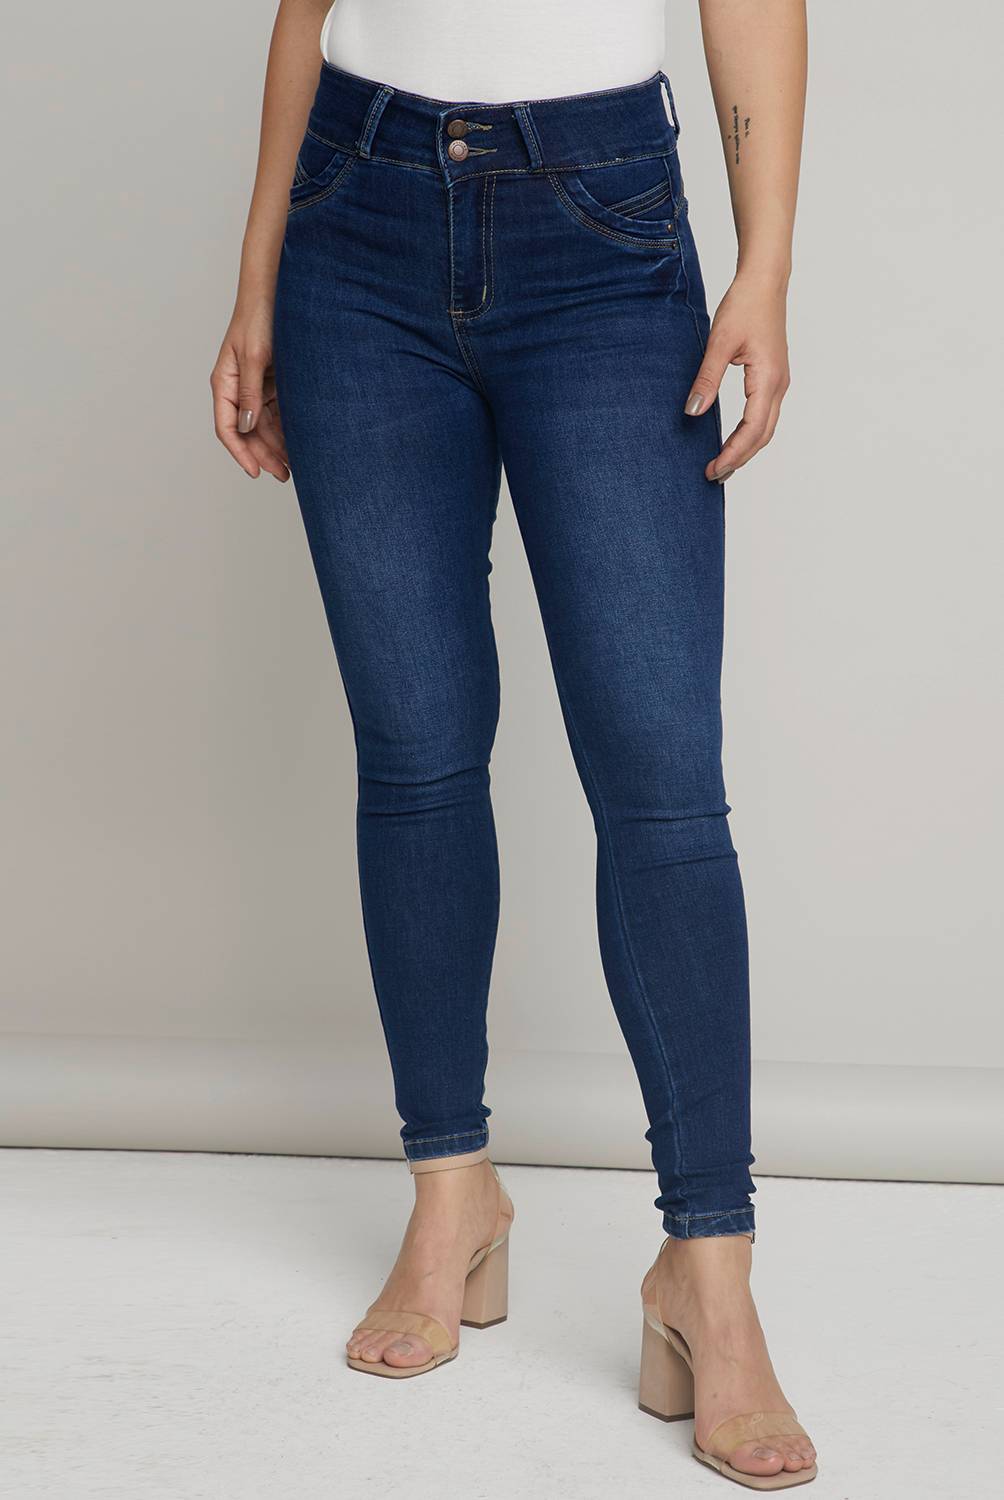 MOSSIMO Jeans Skinny Tiro Alto Mujer Mossimo